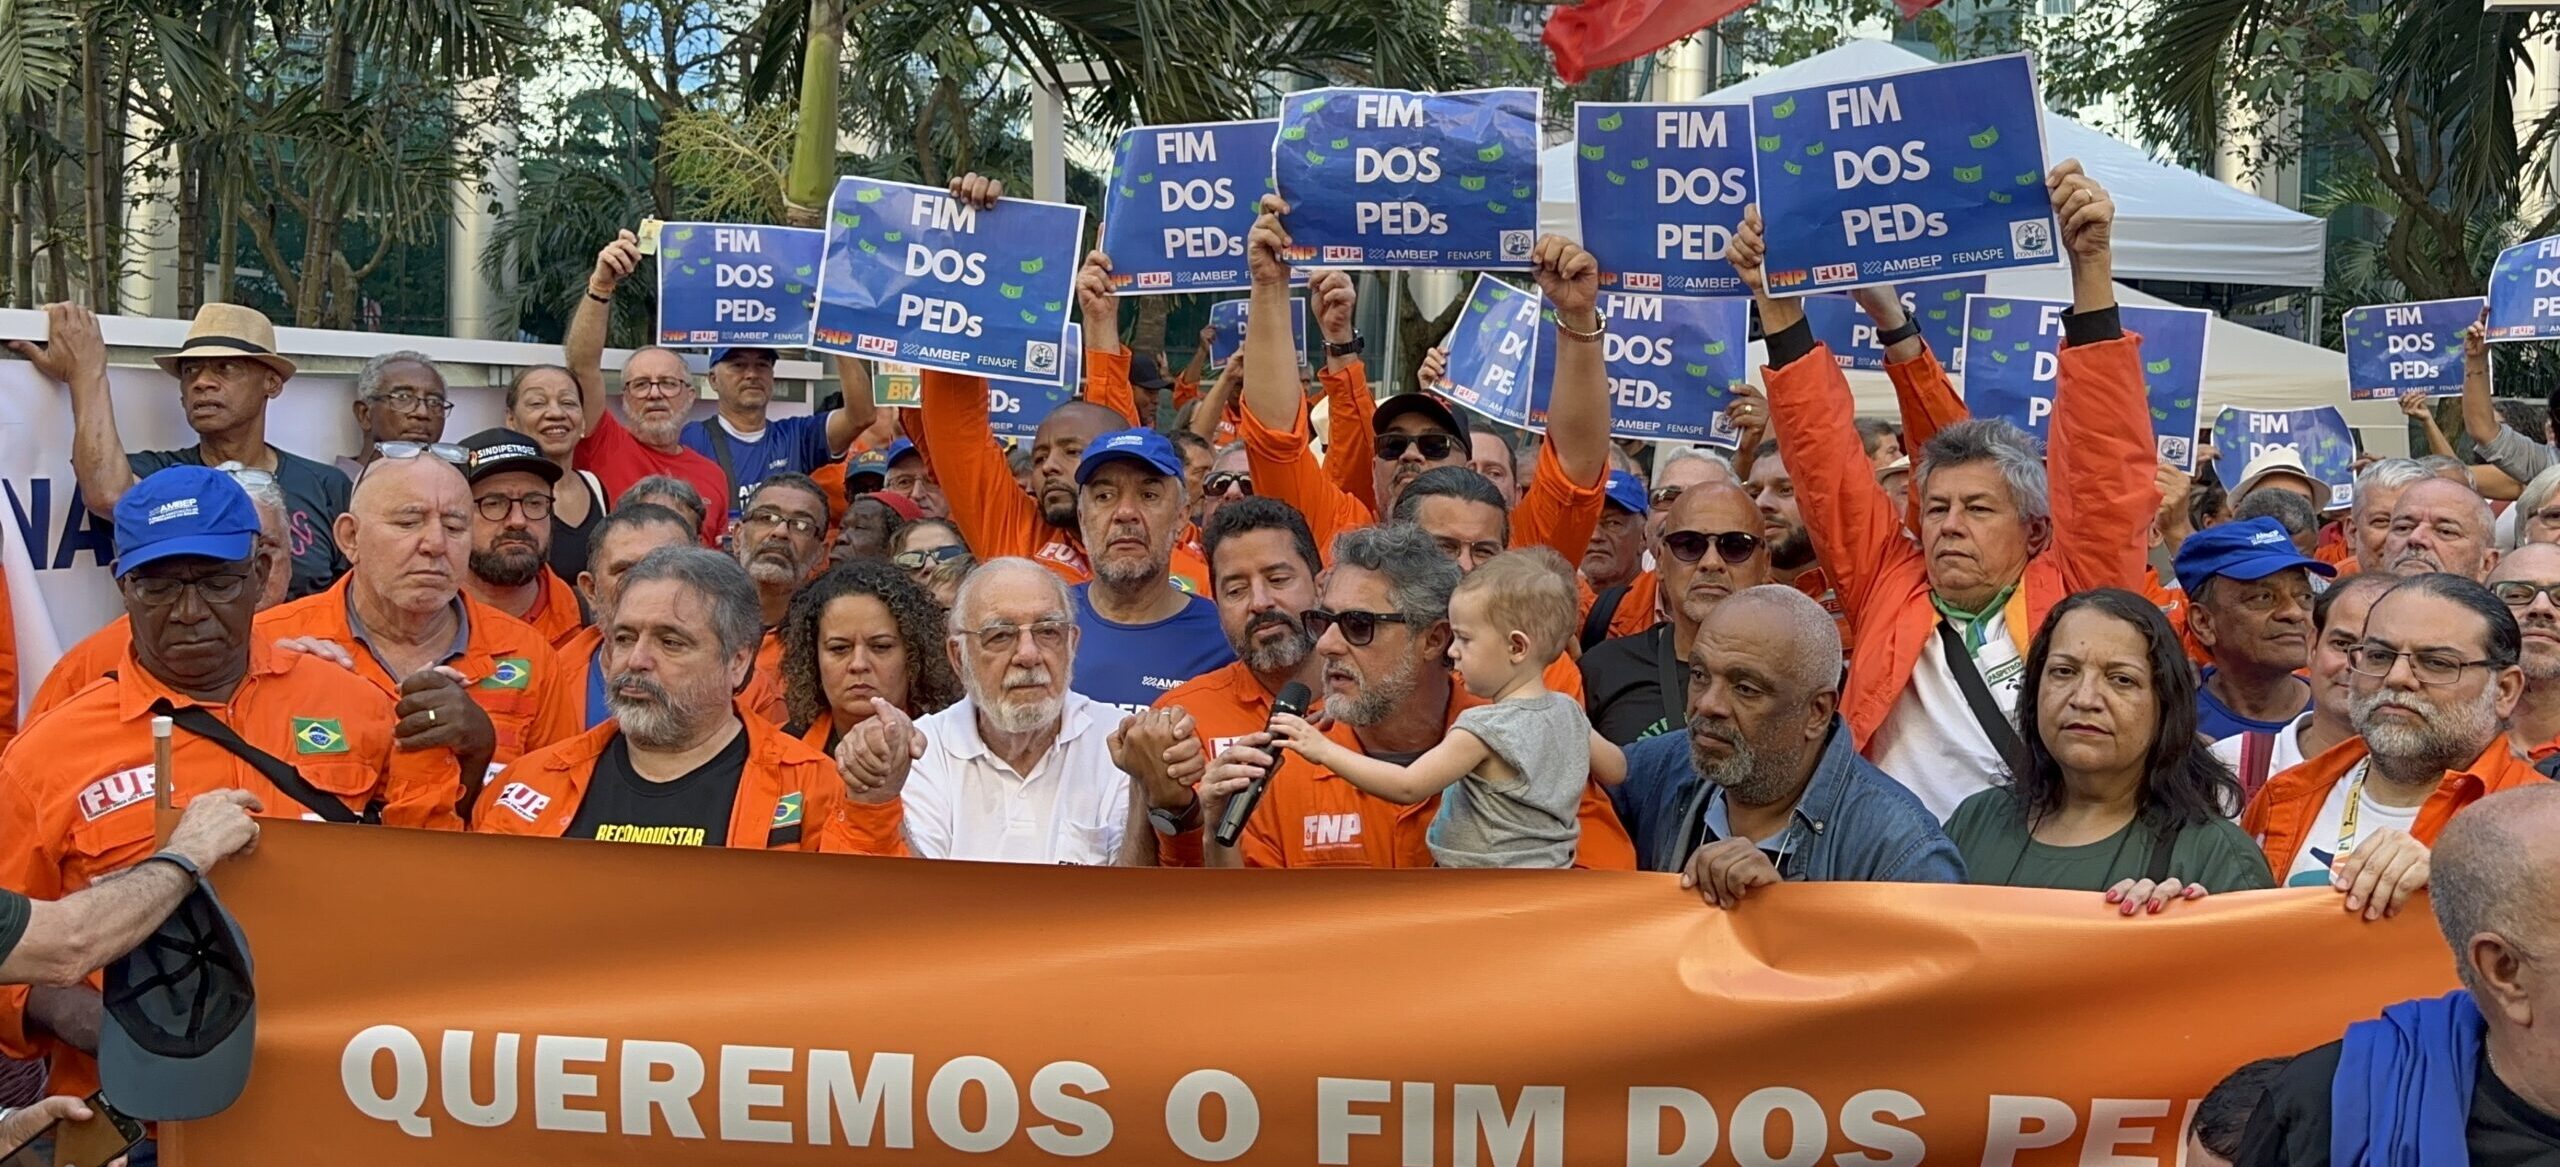 Relembre: 15 dias de Vigilia em ato na frente do edificio da Petrobras